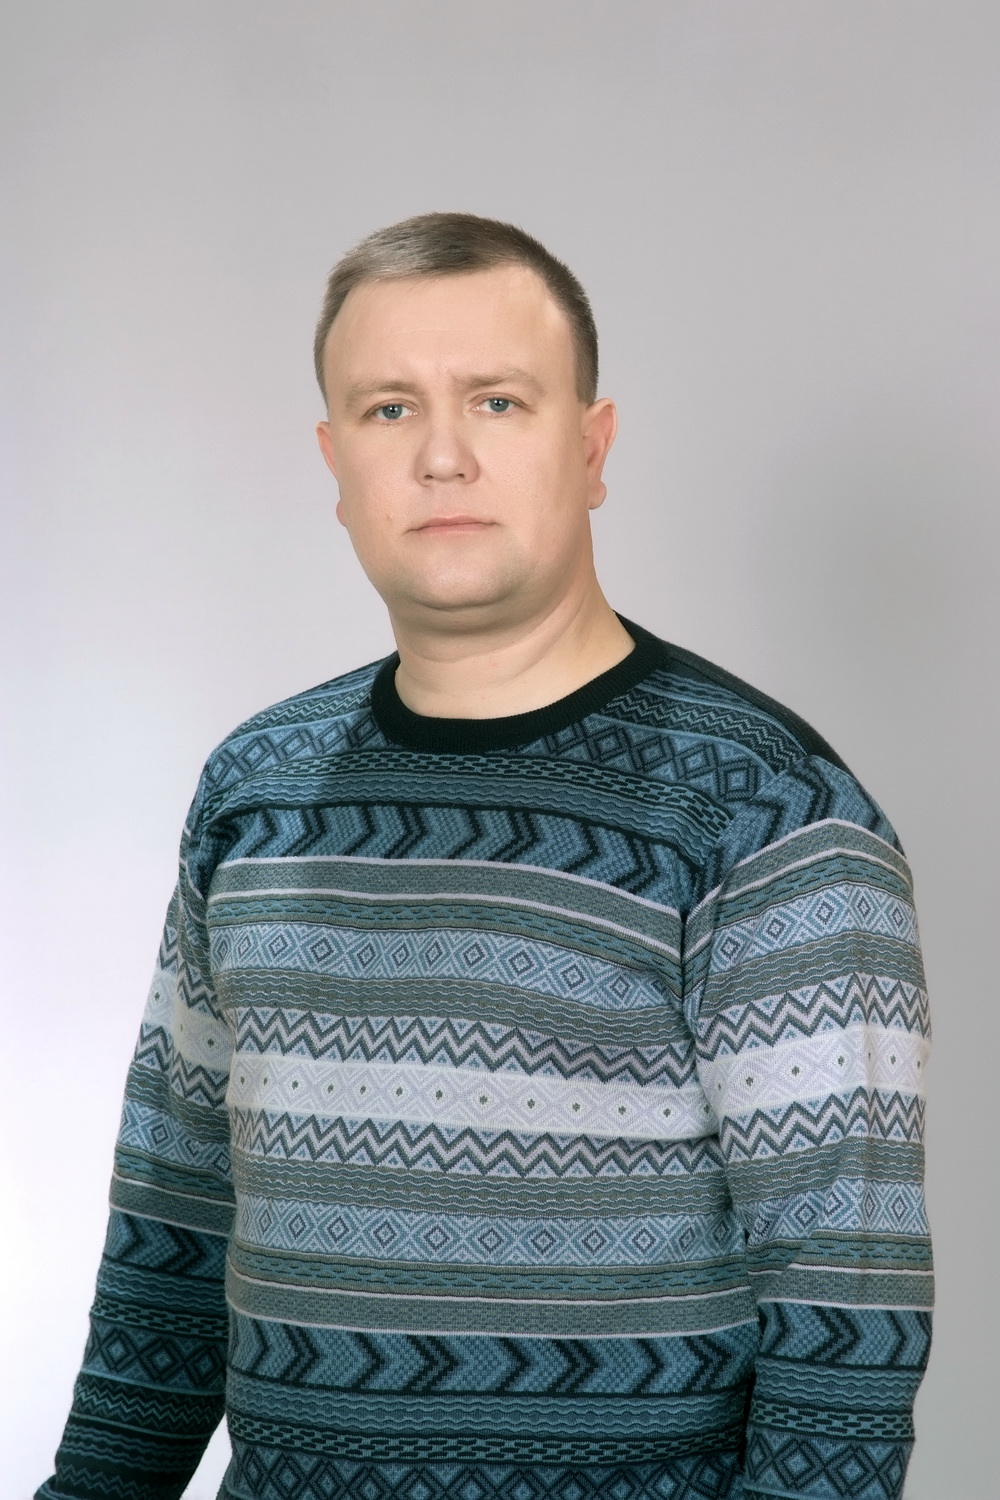 Головин Олег Николаевич.